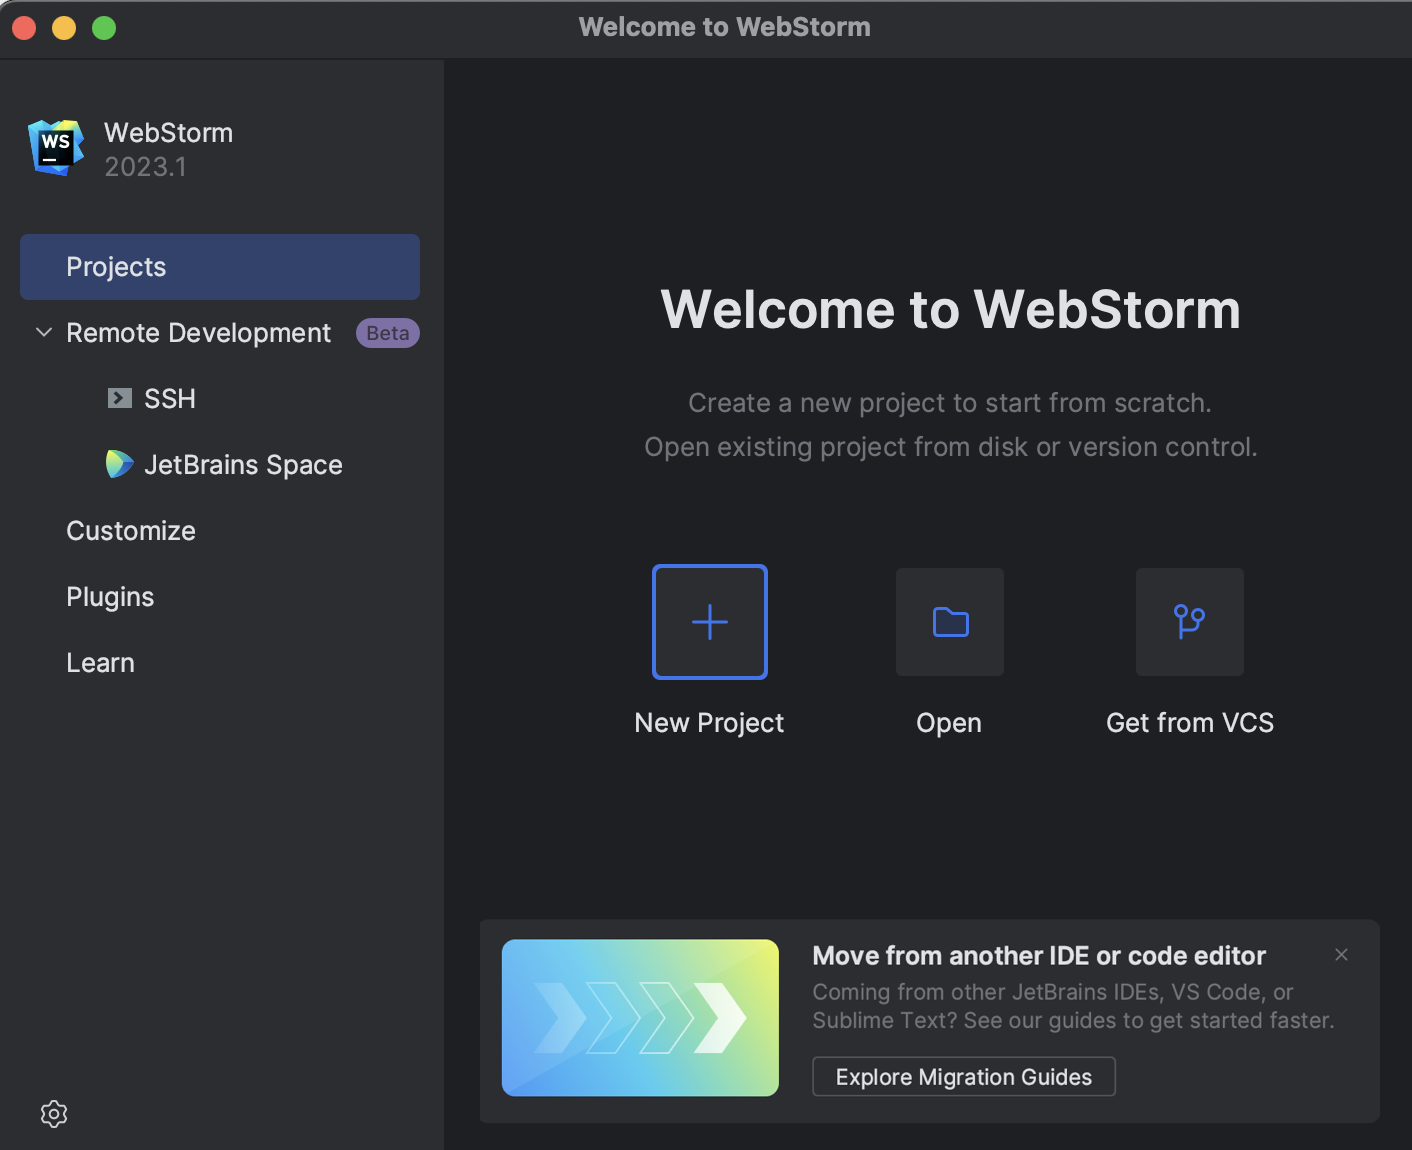 WebStorm Welcome Screen